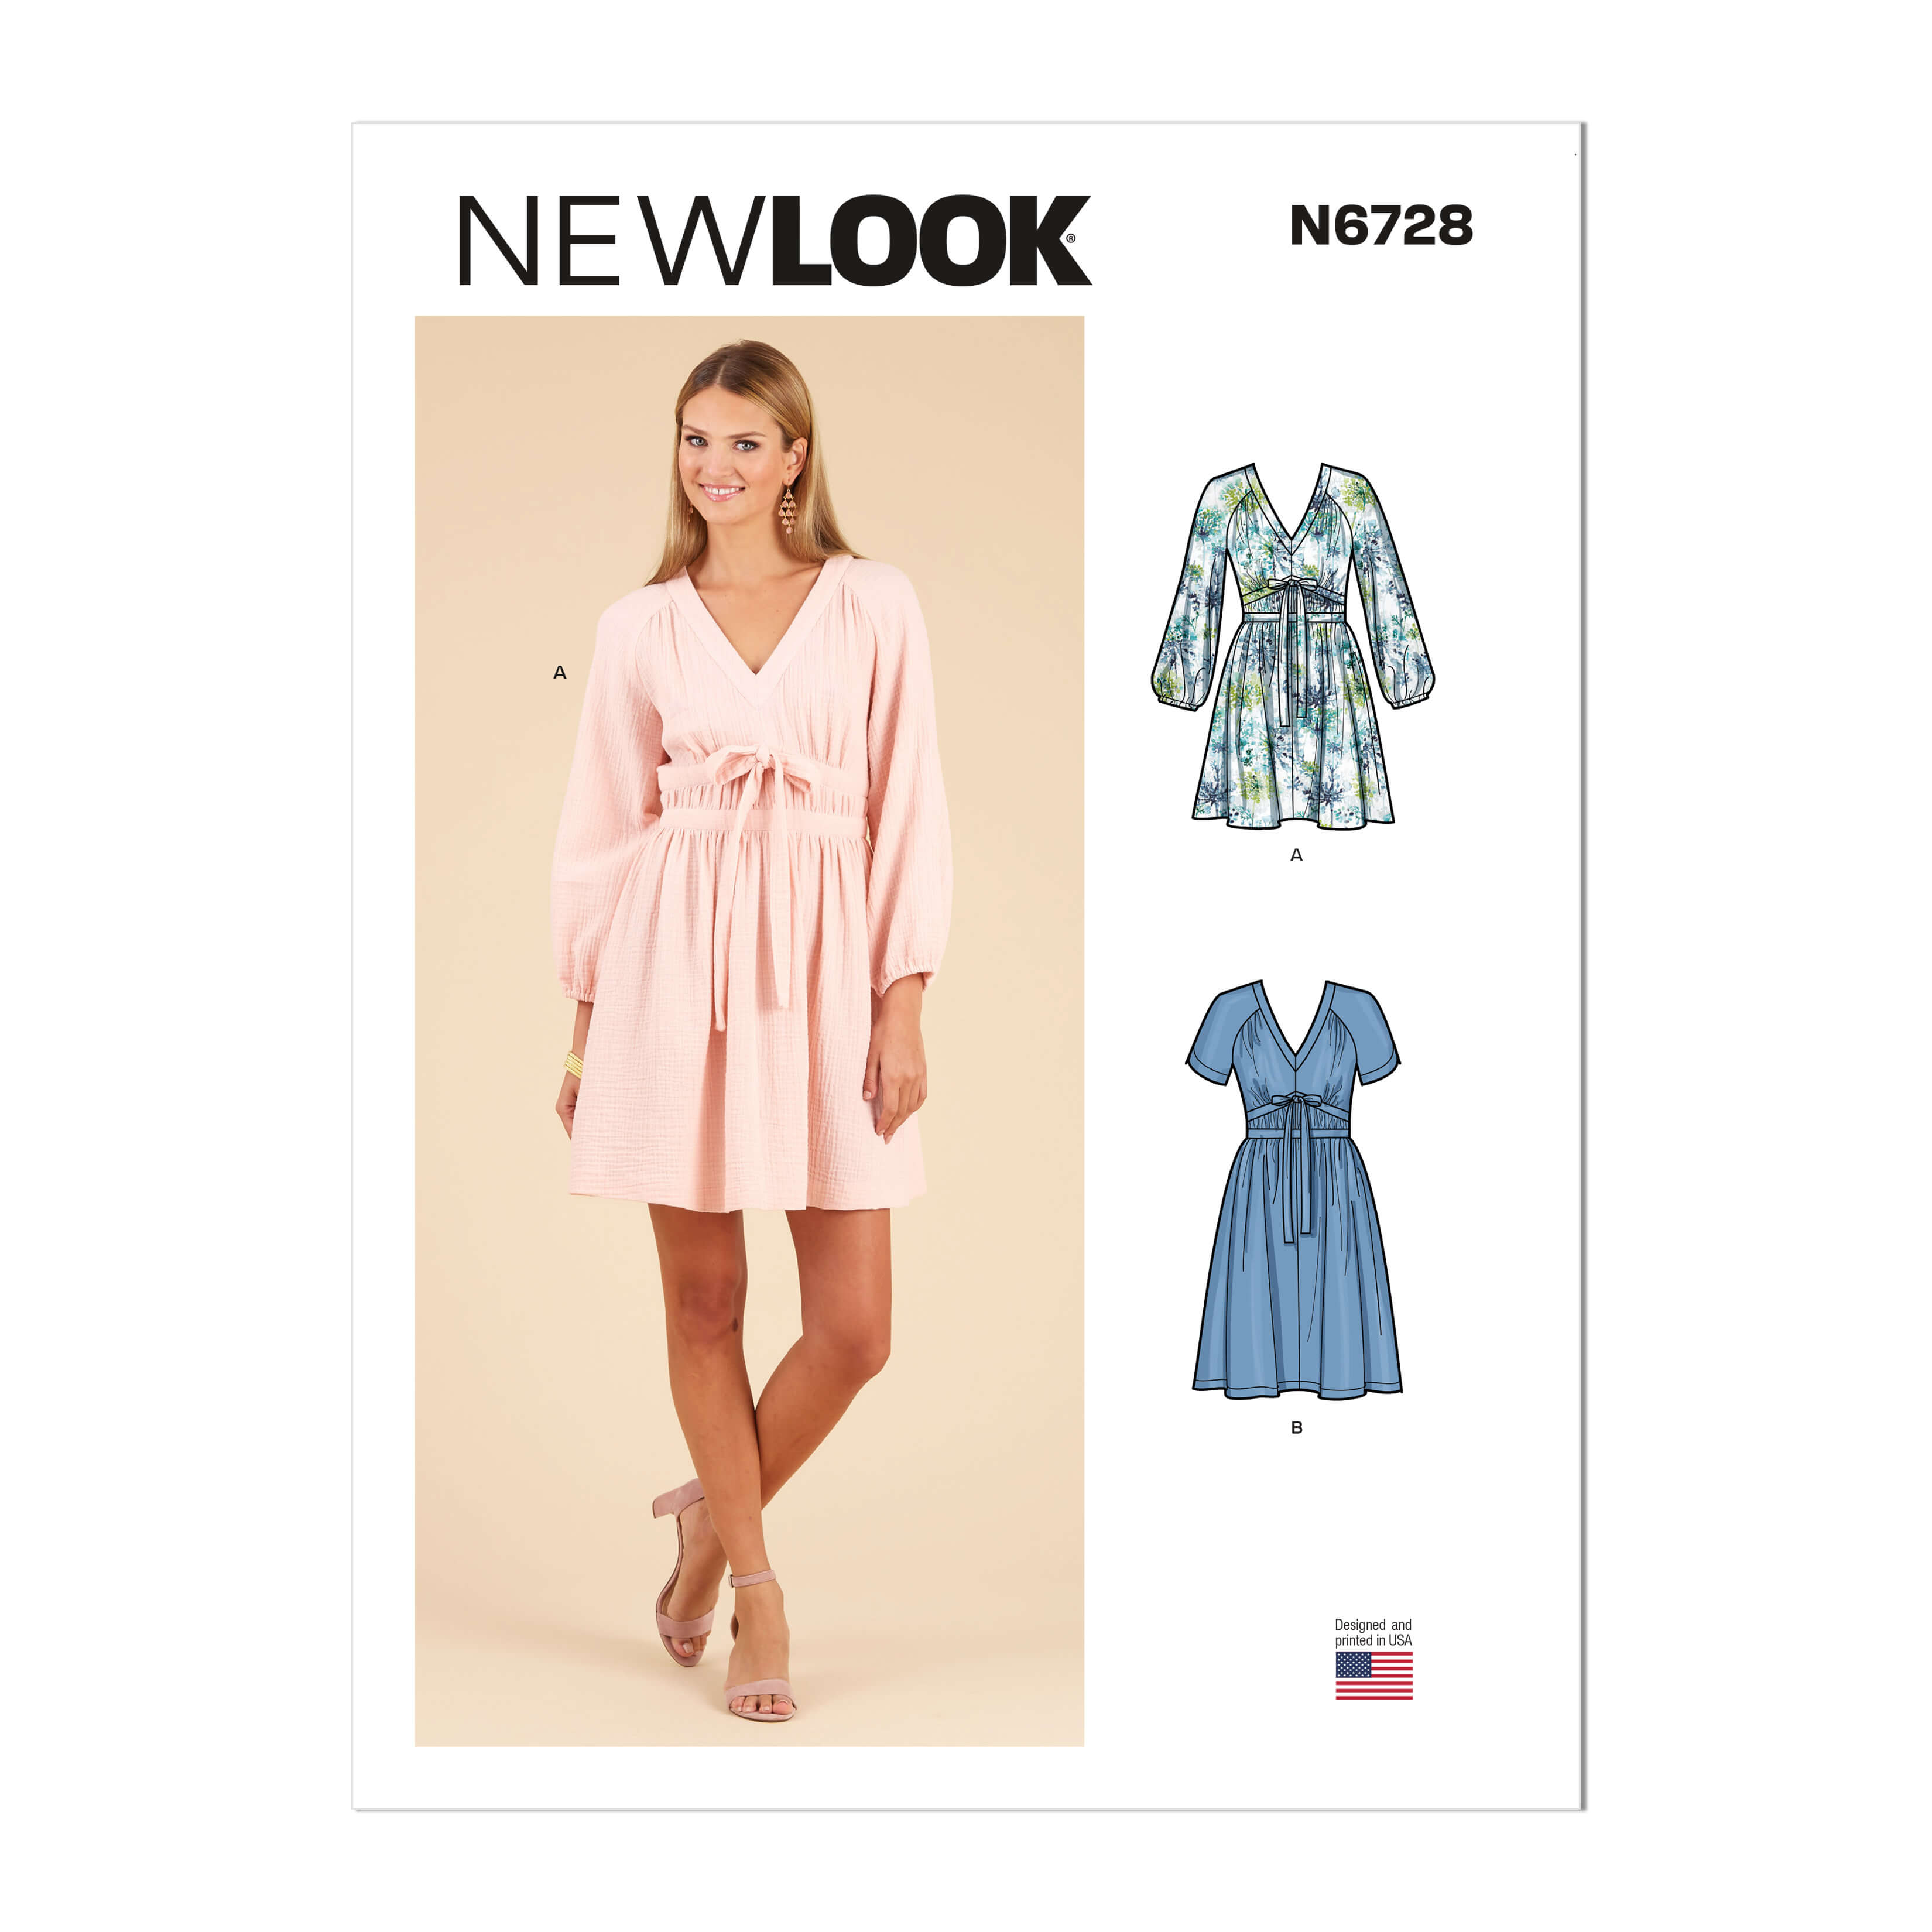 New Look Sewing Pattern N6728 Misses' Dresses